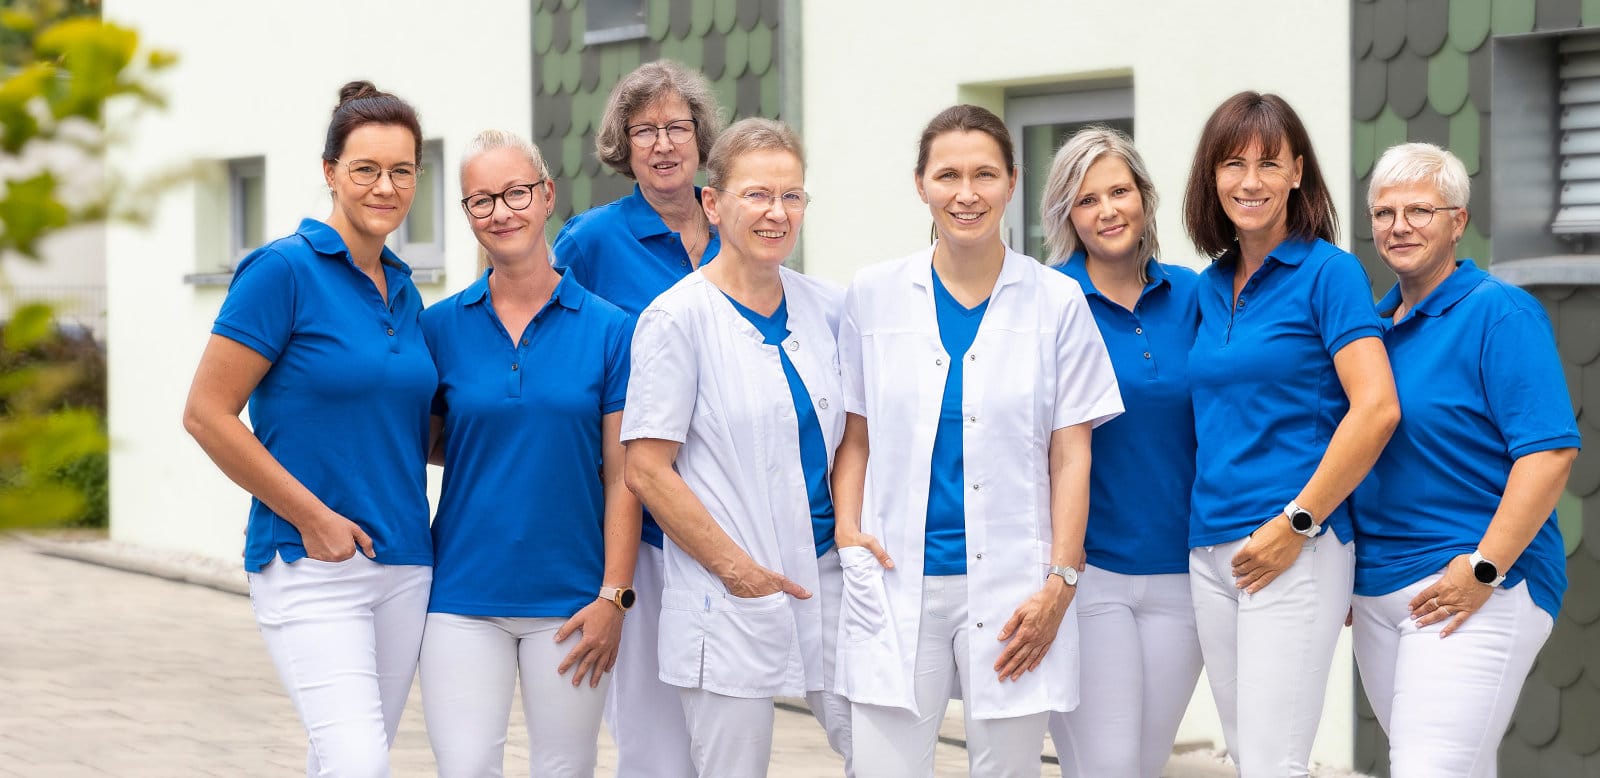 Acht Frauen in weißer Hose und blauem Shirt vor dem grünen Praxisgebäude stehend